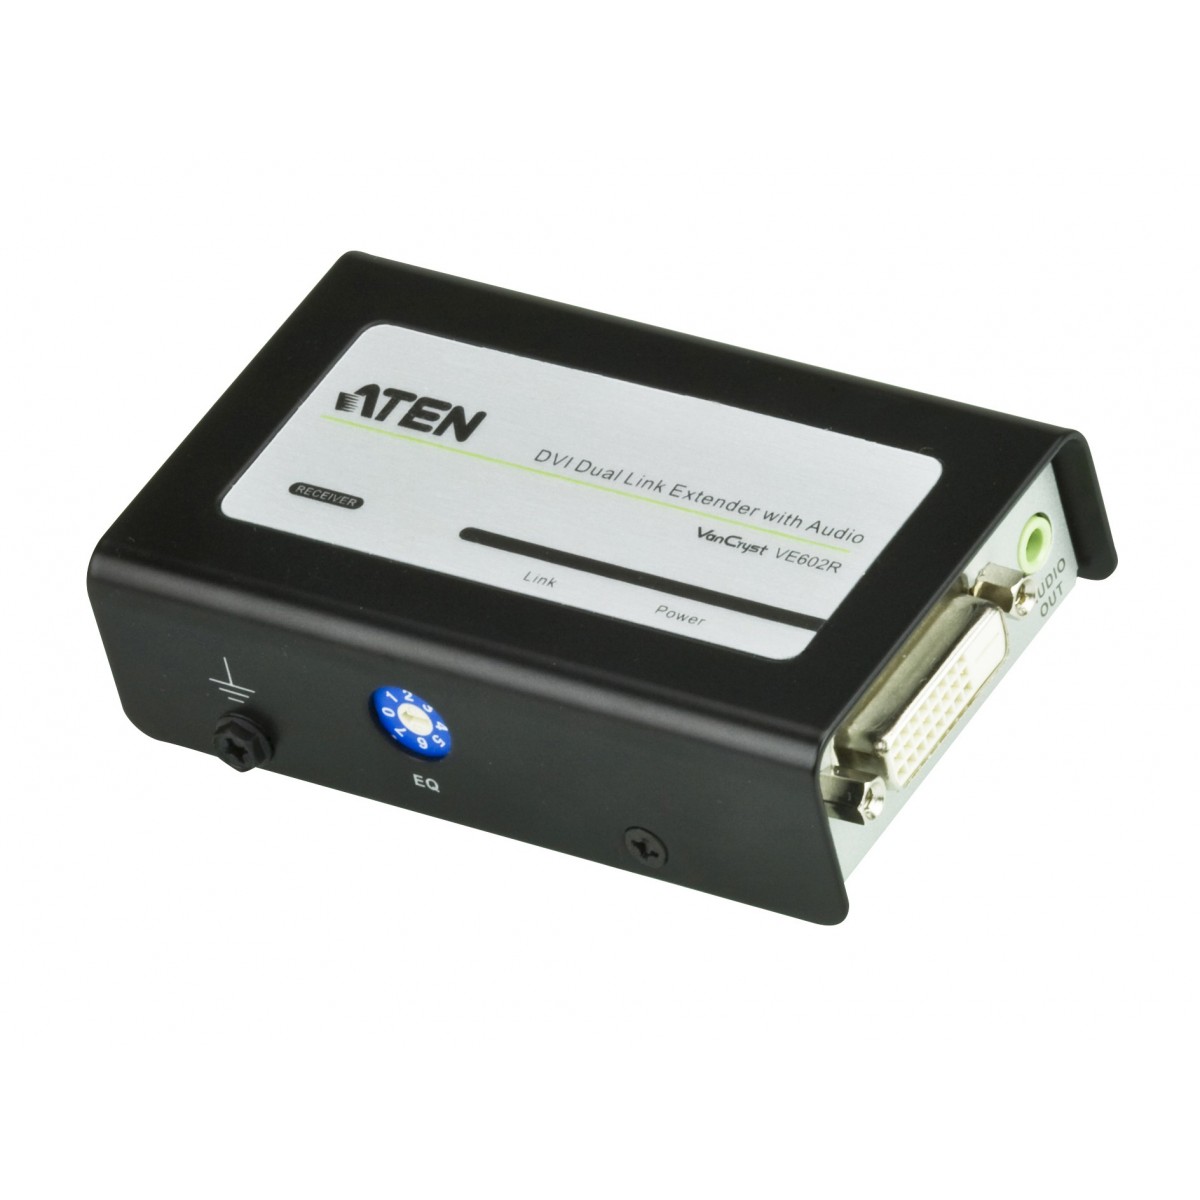 ATEN VE602 - 2560 x 1600 pixels - AV transmitter & receiver - 60 m - Black